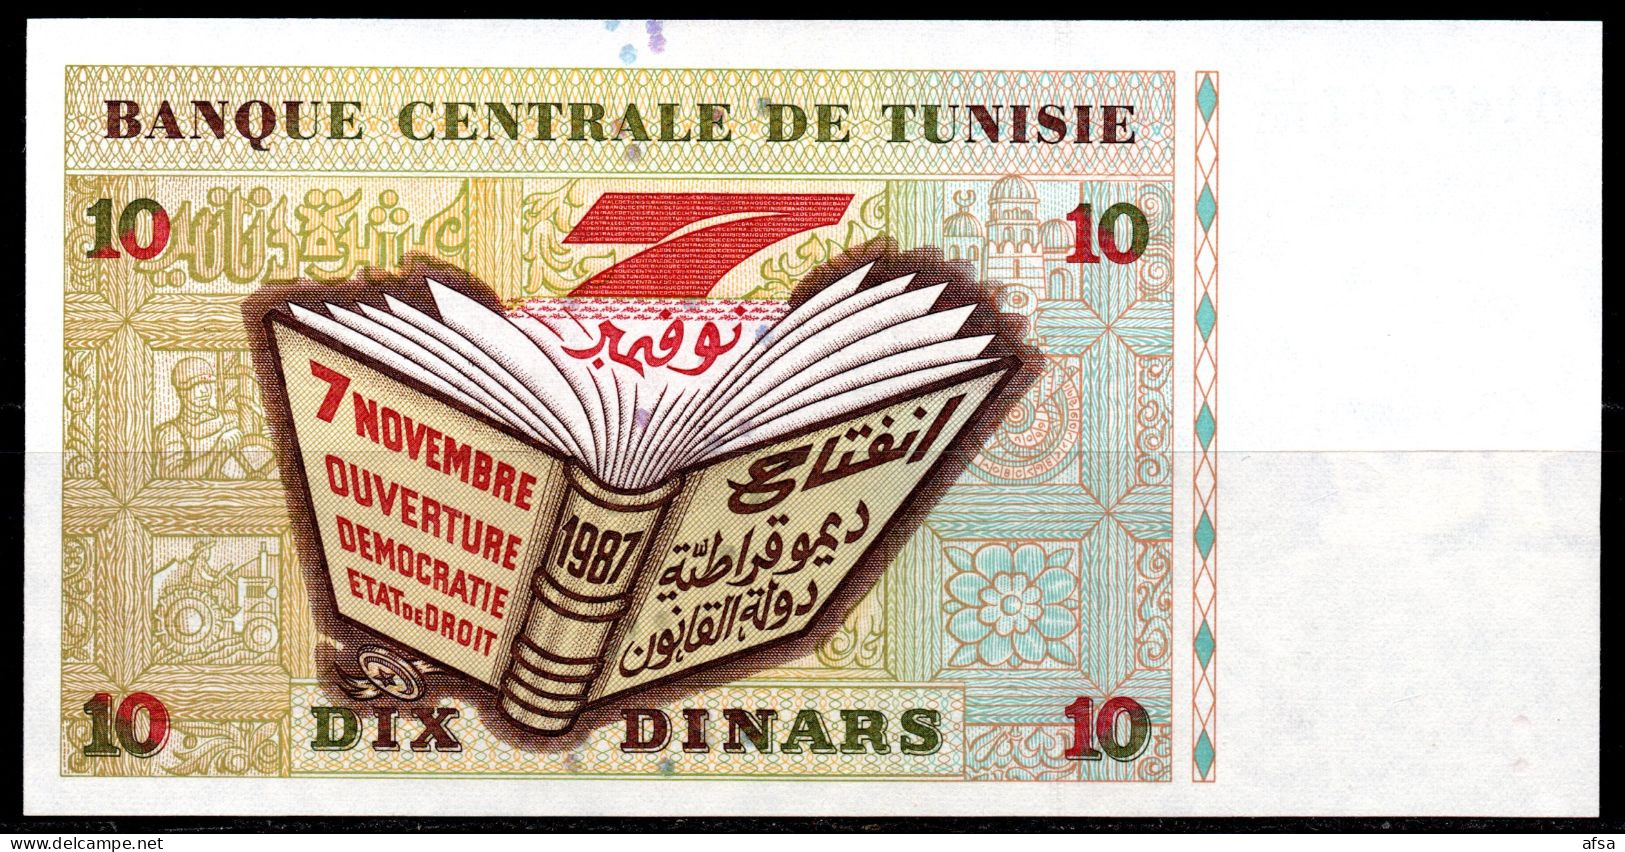 10-Dinars1994-P. 87A-Very Nice Serial N°-trés Beau N° De Série-UNC**-Neuf(2 Scans-2 Images) Envoi Gratuit -Free Shipping - Tunisia